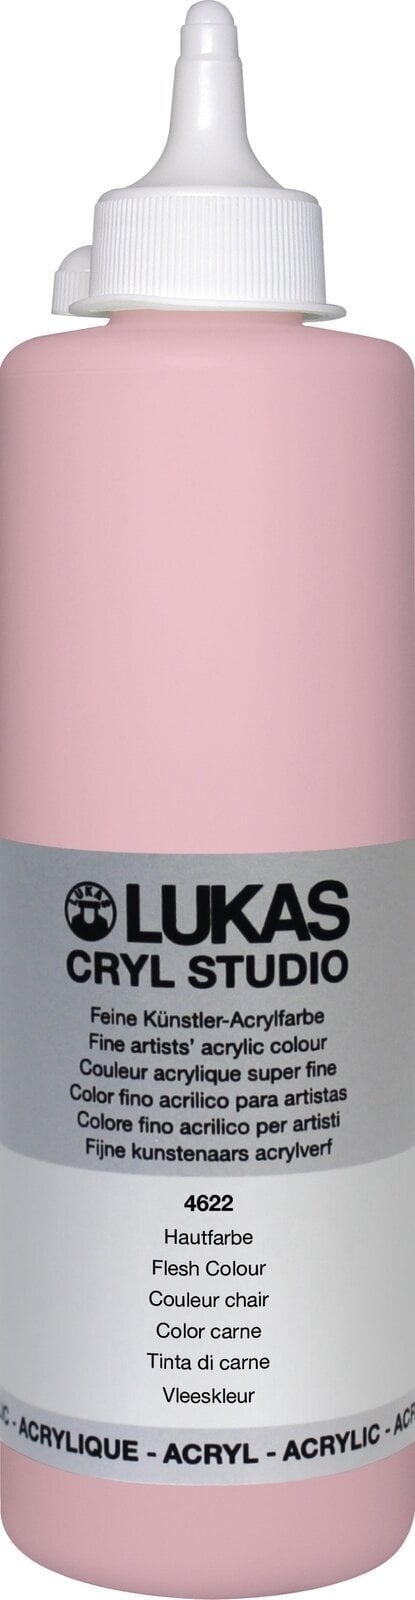 Pintura acrílica Lukas Cryl Studio Acrylic Paint 500 ml Peach Pink Pintura acrílica